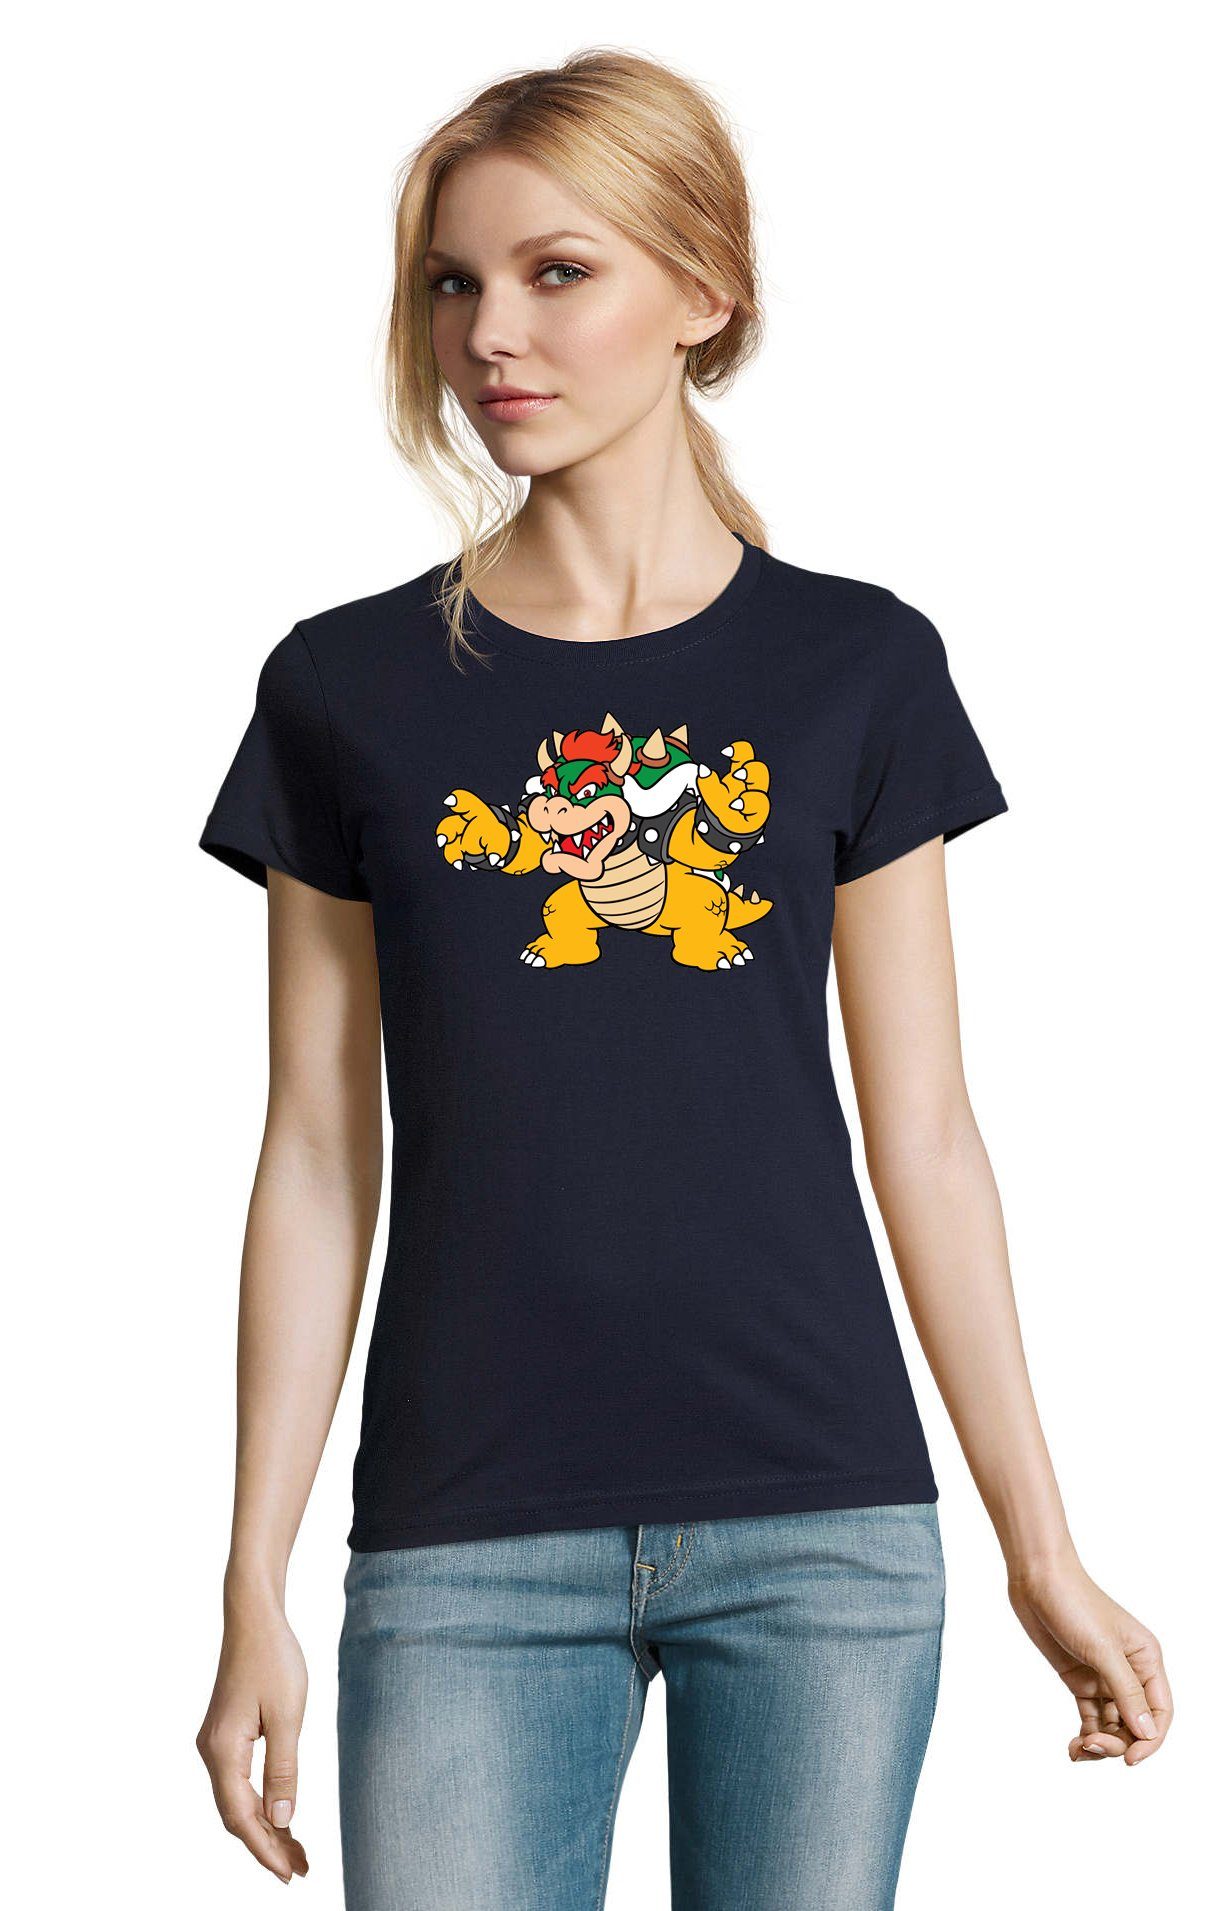 Blondie & Brownie T-Shirt Damen Bowser Nintendo Mario Yoshi Luigi Game Gamer Gaming Konsole Navyblau